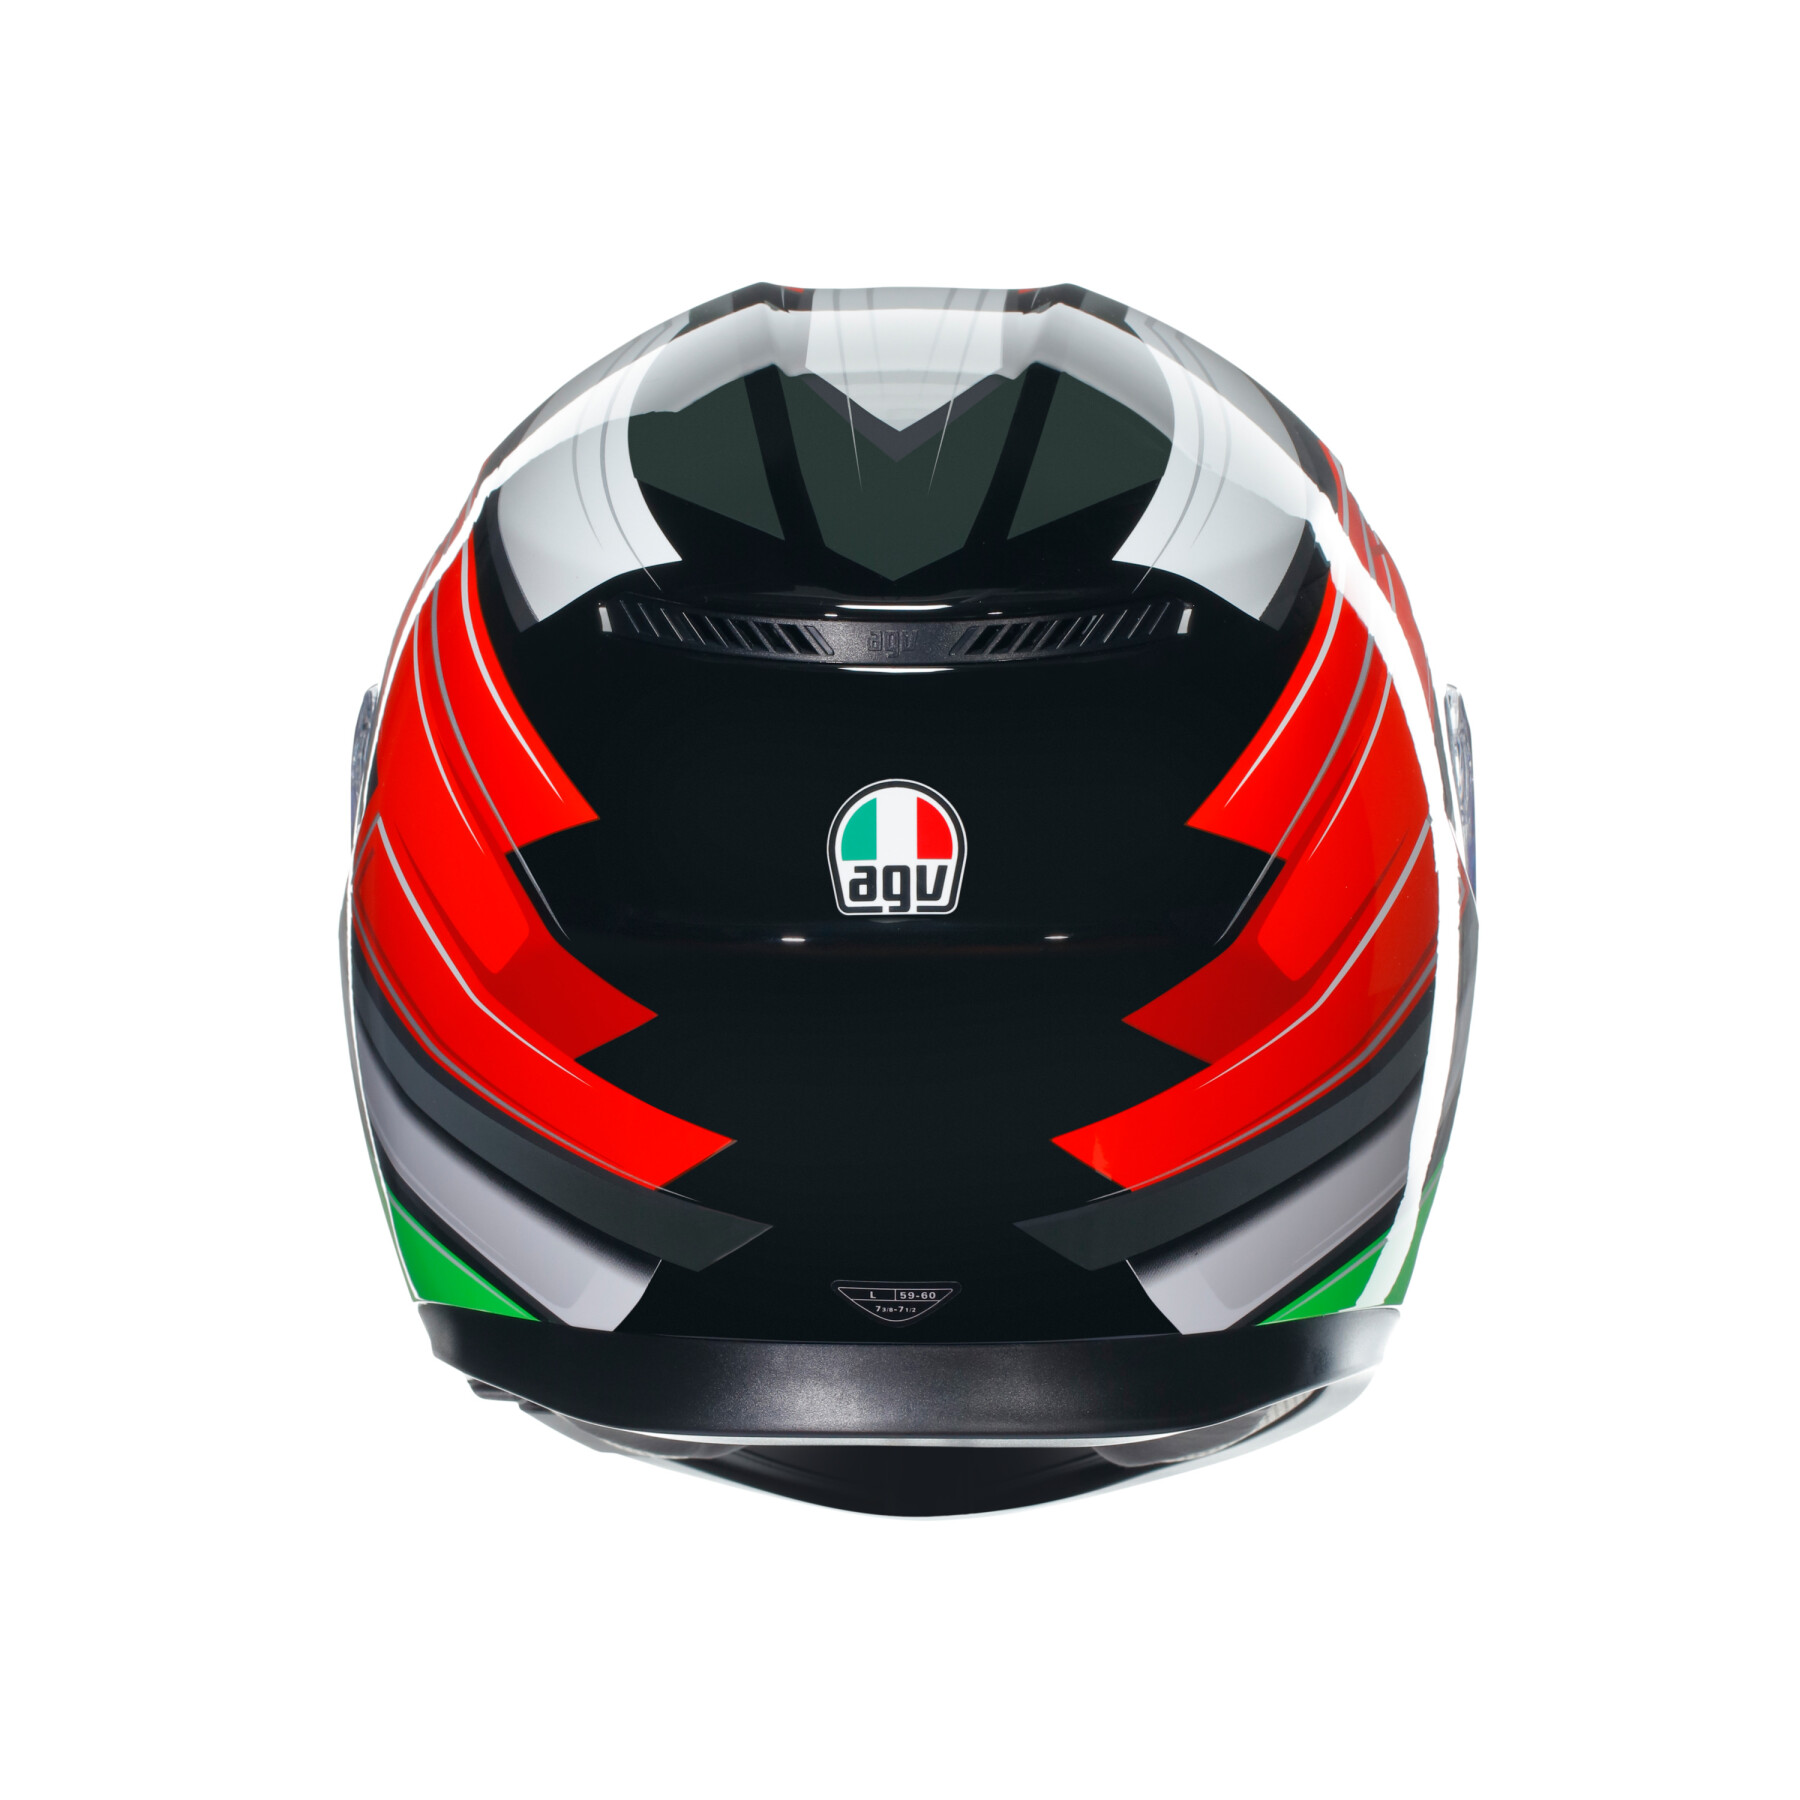 Full face motorcycle helmet AGV K3 Wing